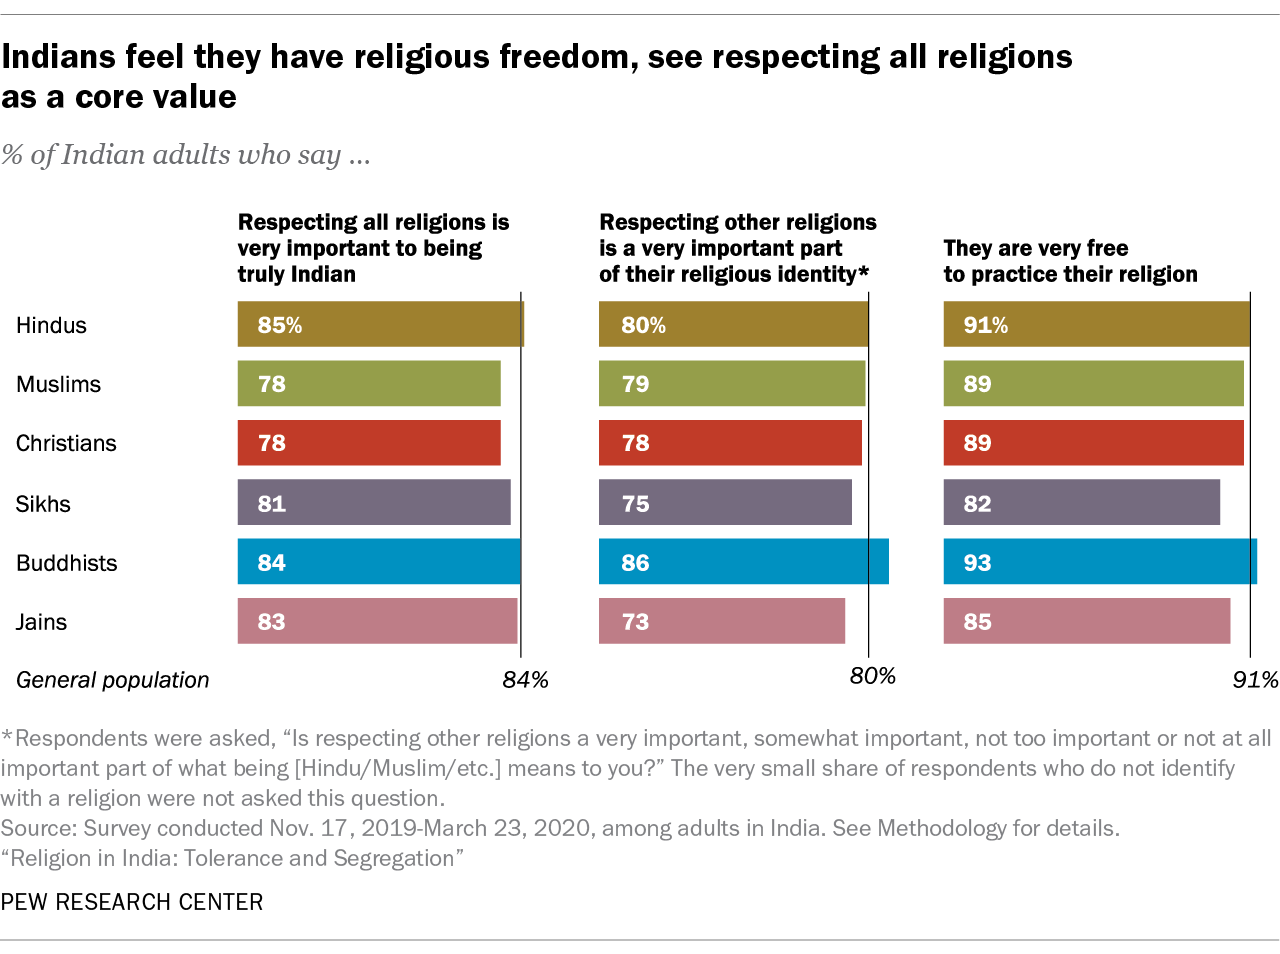 os índios sentem que têm liberdade religiosa, vêem respeitar todas as religiões como um valor central